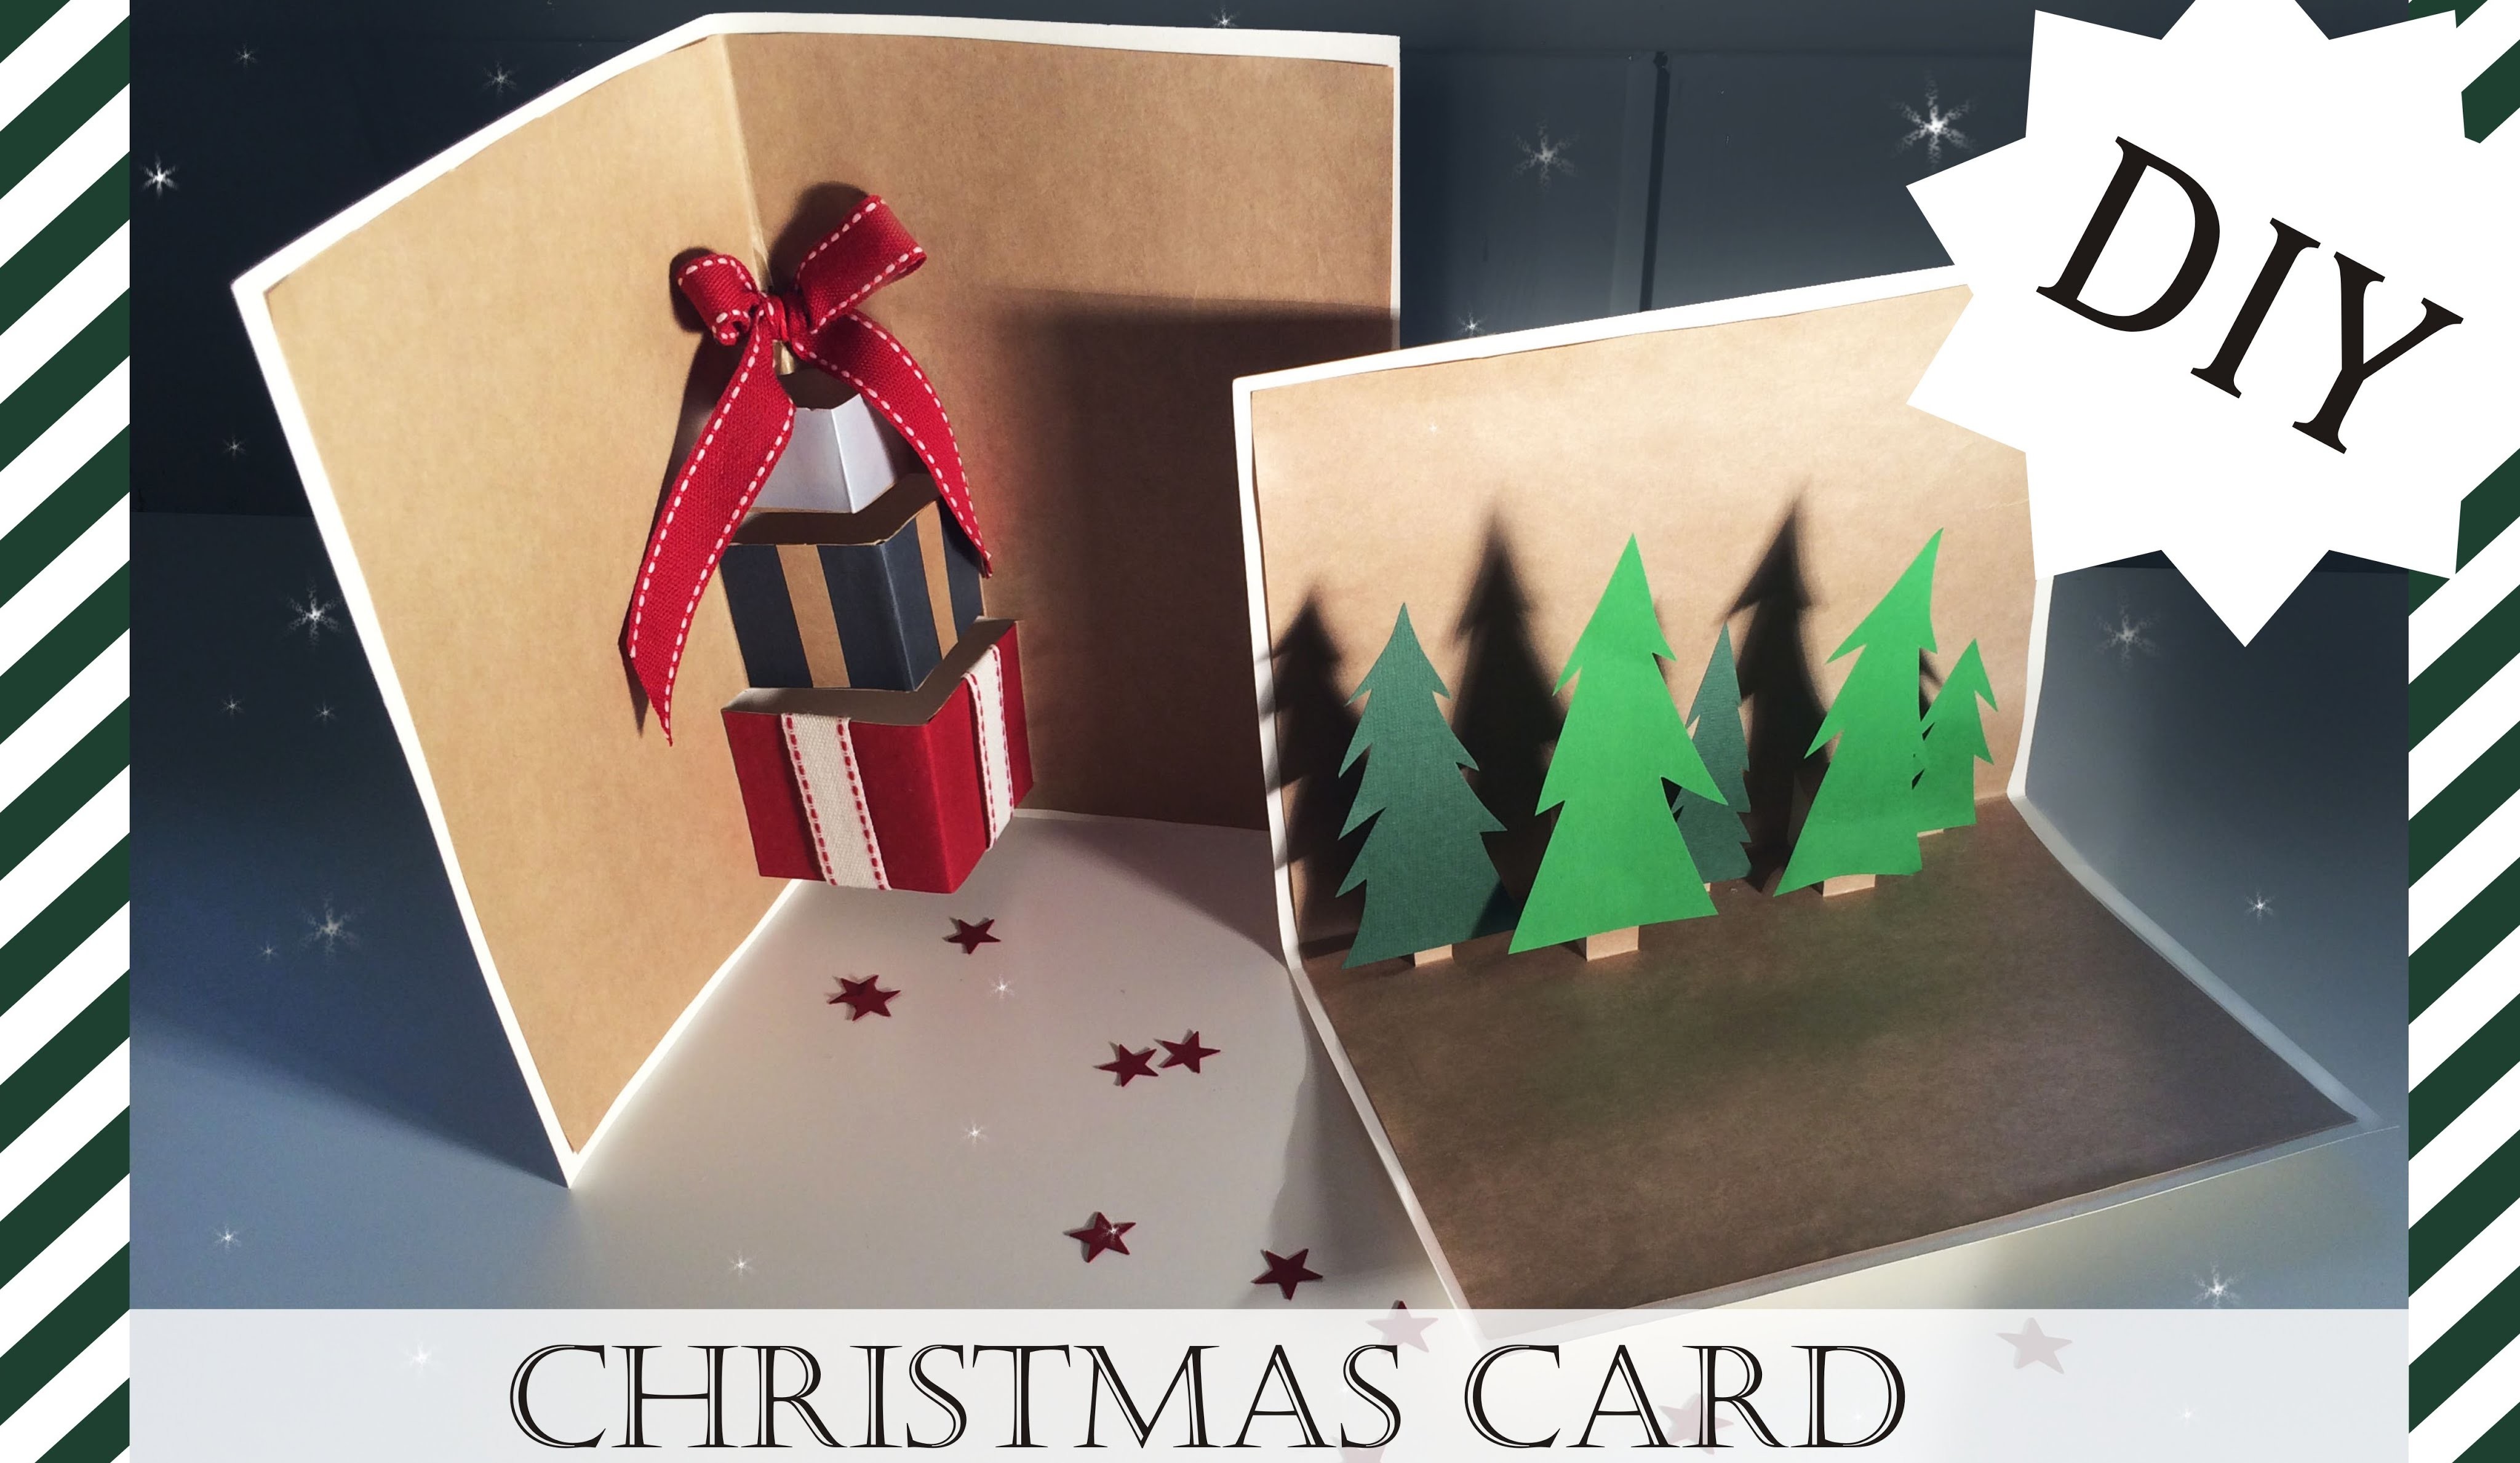 ✩ DIY : Christmas Cards ✩ KARTKI ŚWIĄTECZNE ✩